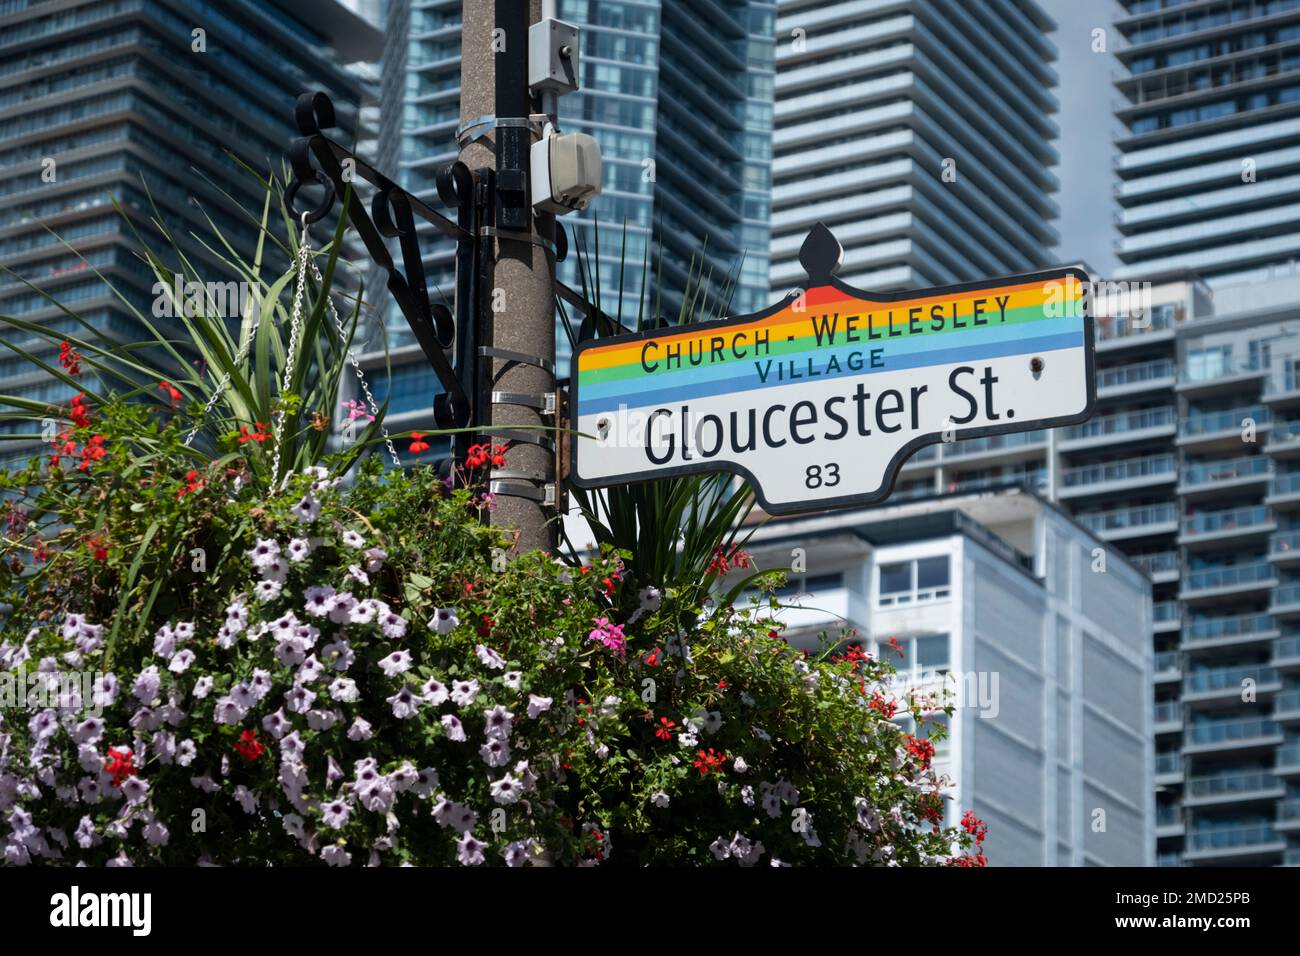 Farbenfrohe Gloucester Street und Church Wellesley Village Schild, Church Wellesley Village, Toronto, Kanada Stockfoto